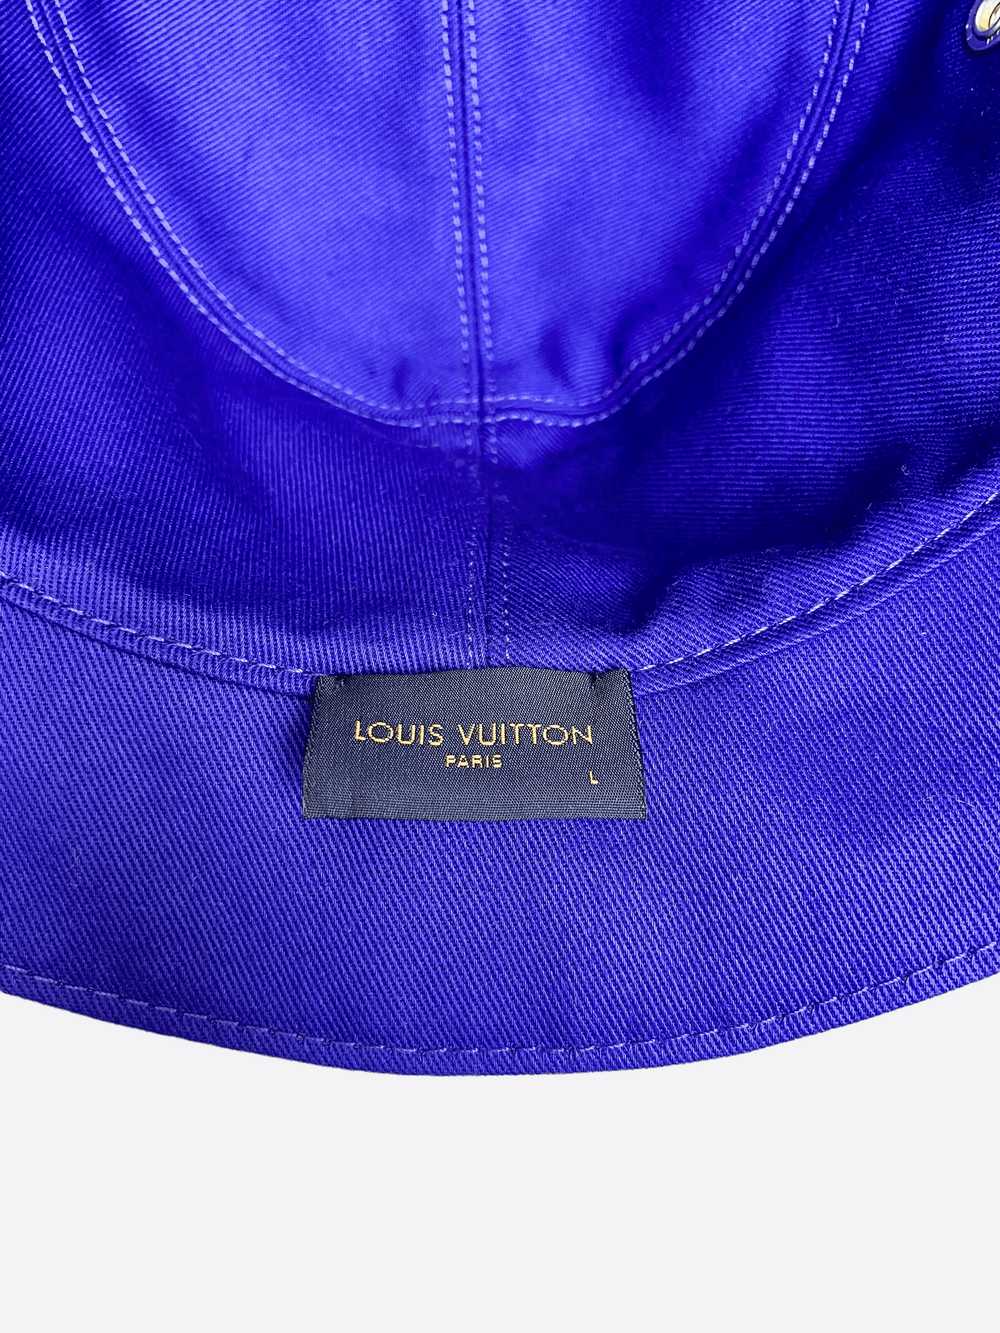 Louis Vuitton Louis Vuitton Gradient Monogram Buc… - image 6